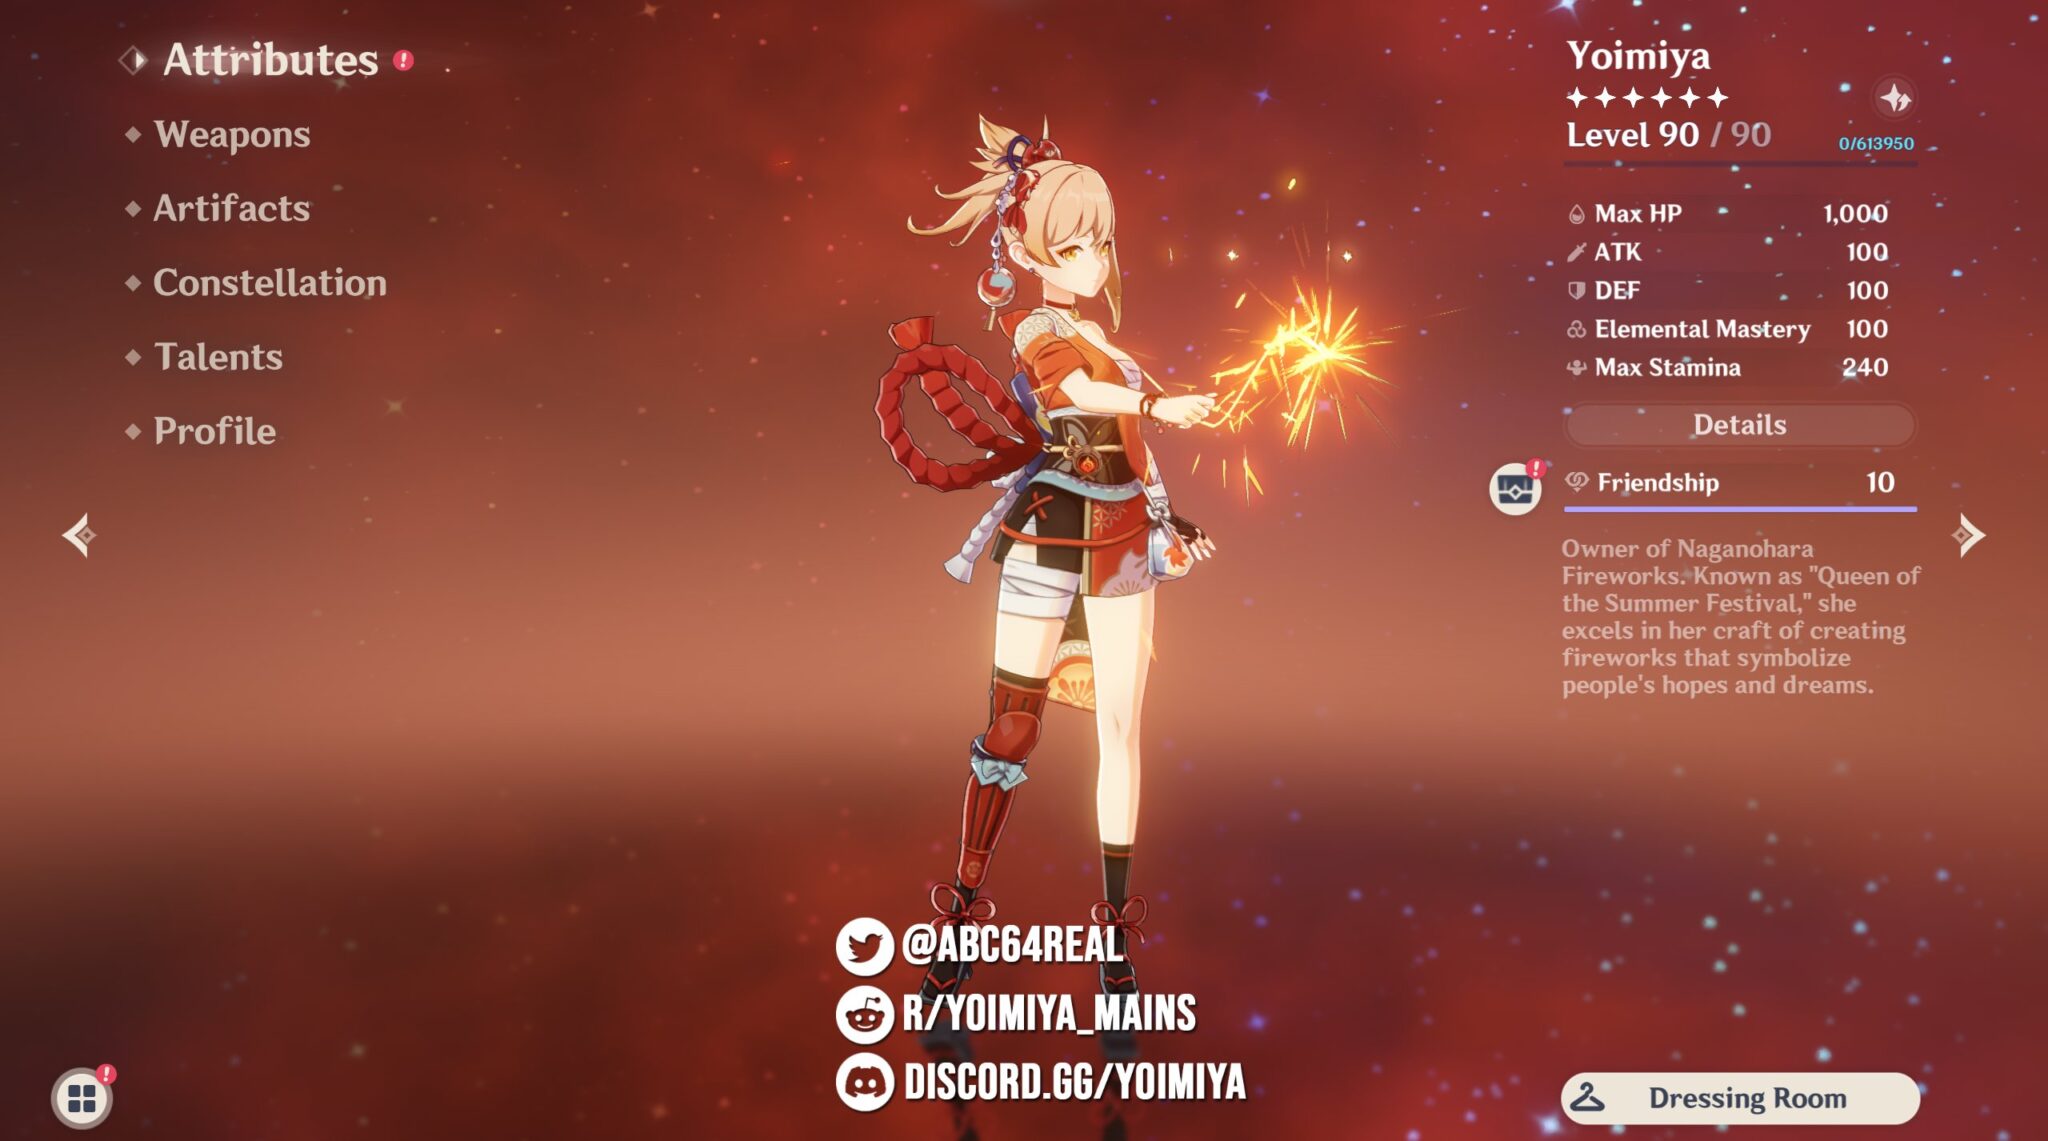 Genshin Impact Yoimiya Character Screen In Game Description Of Her